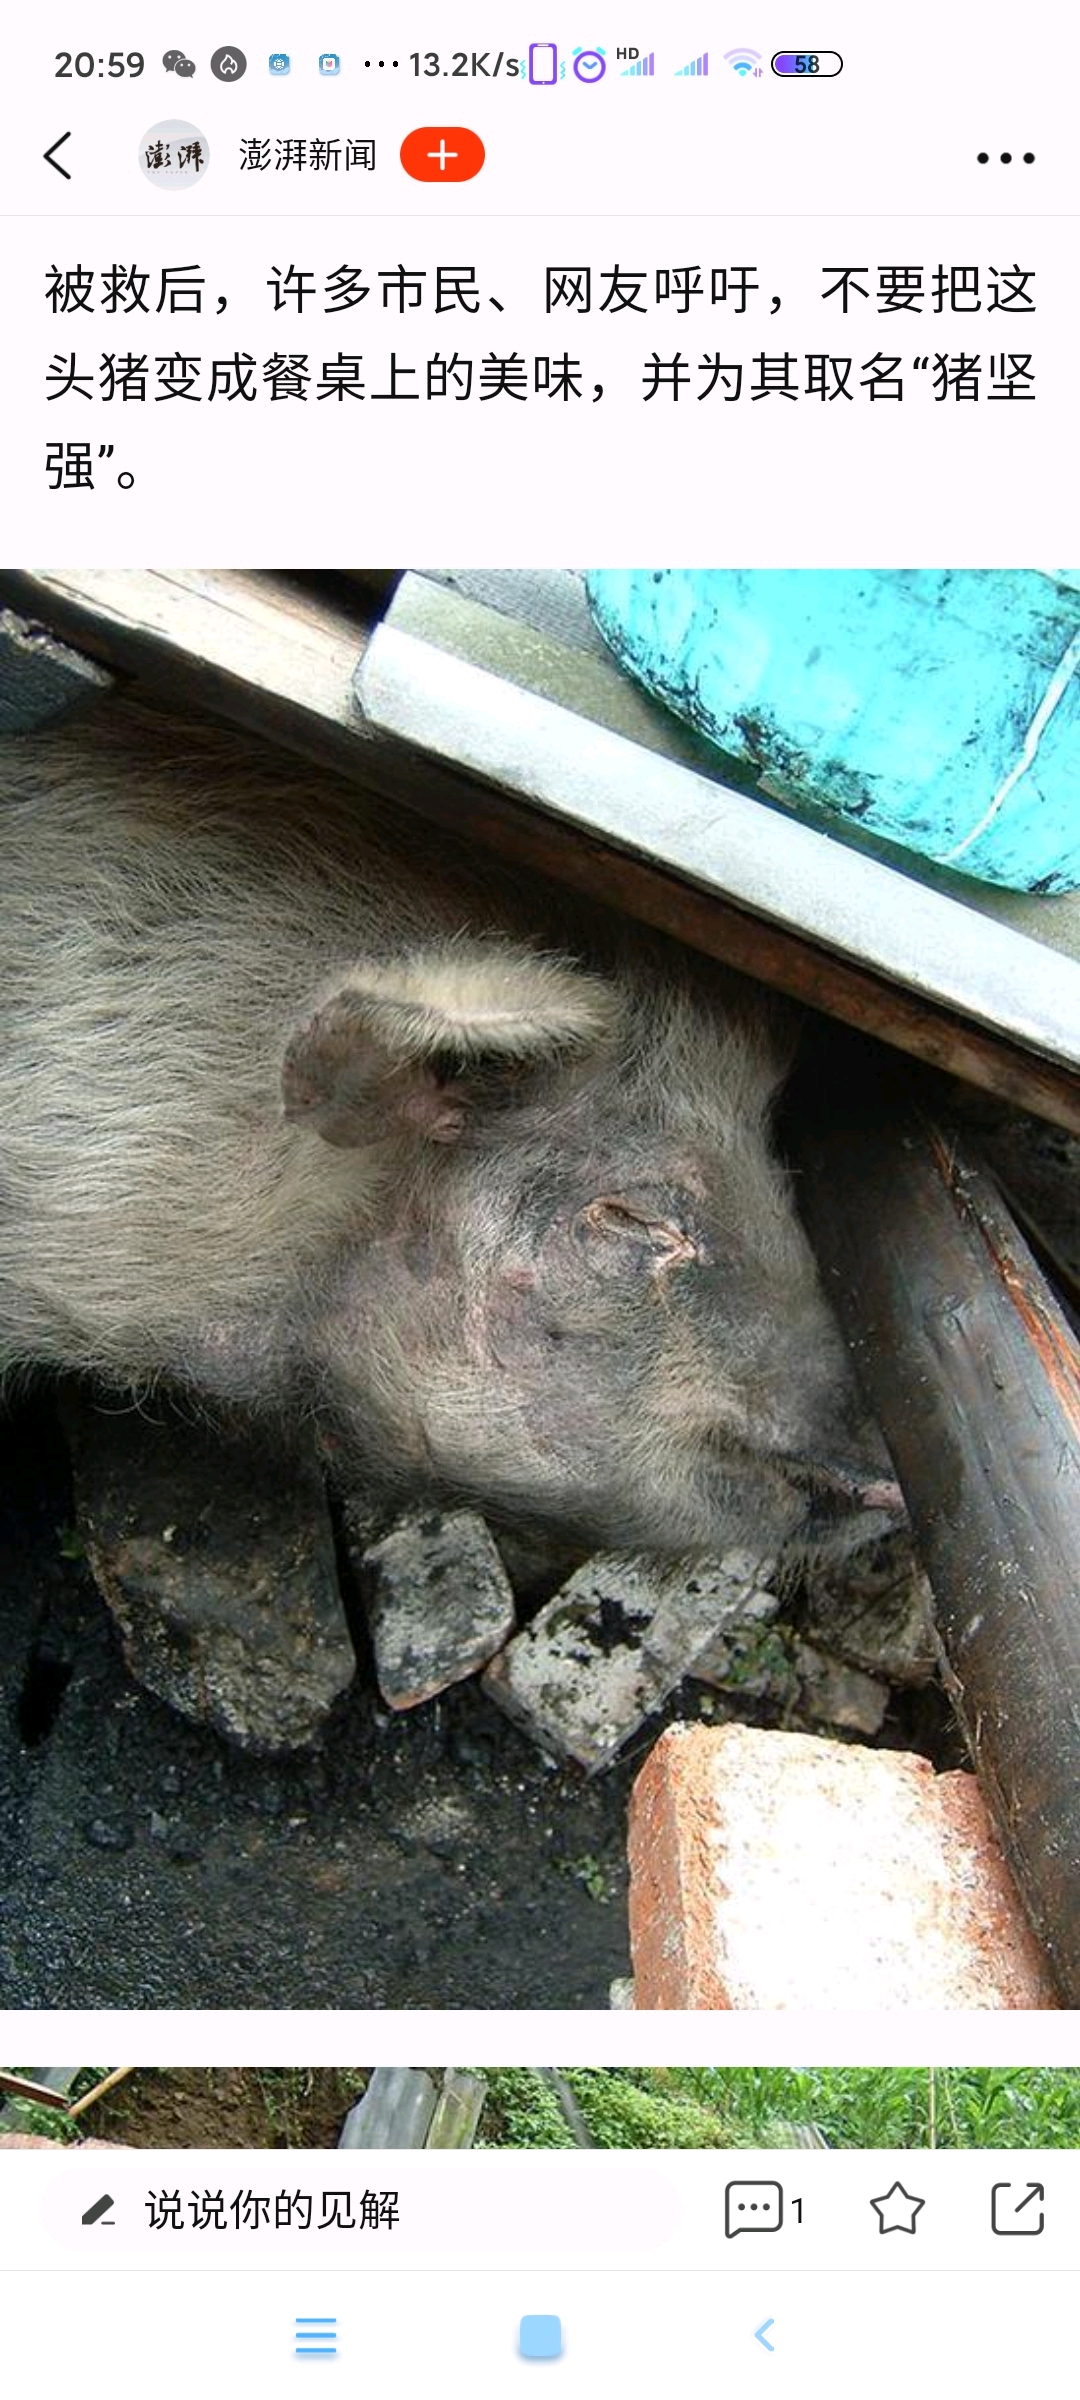 从汶川大地震里面救出来的猪坚强的故事